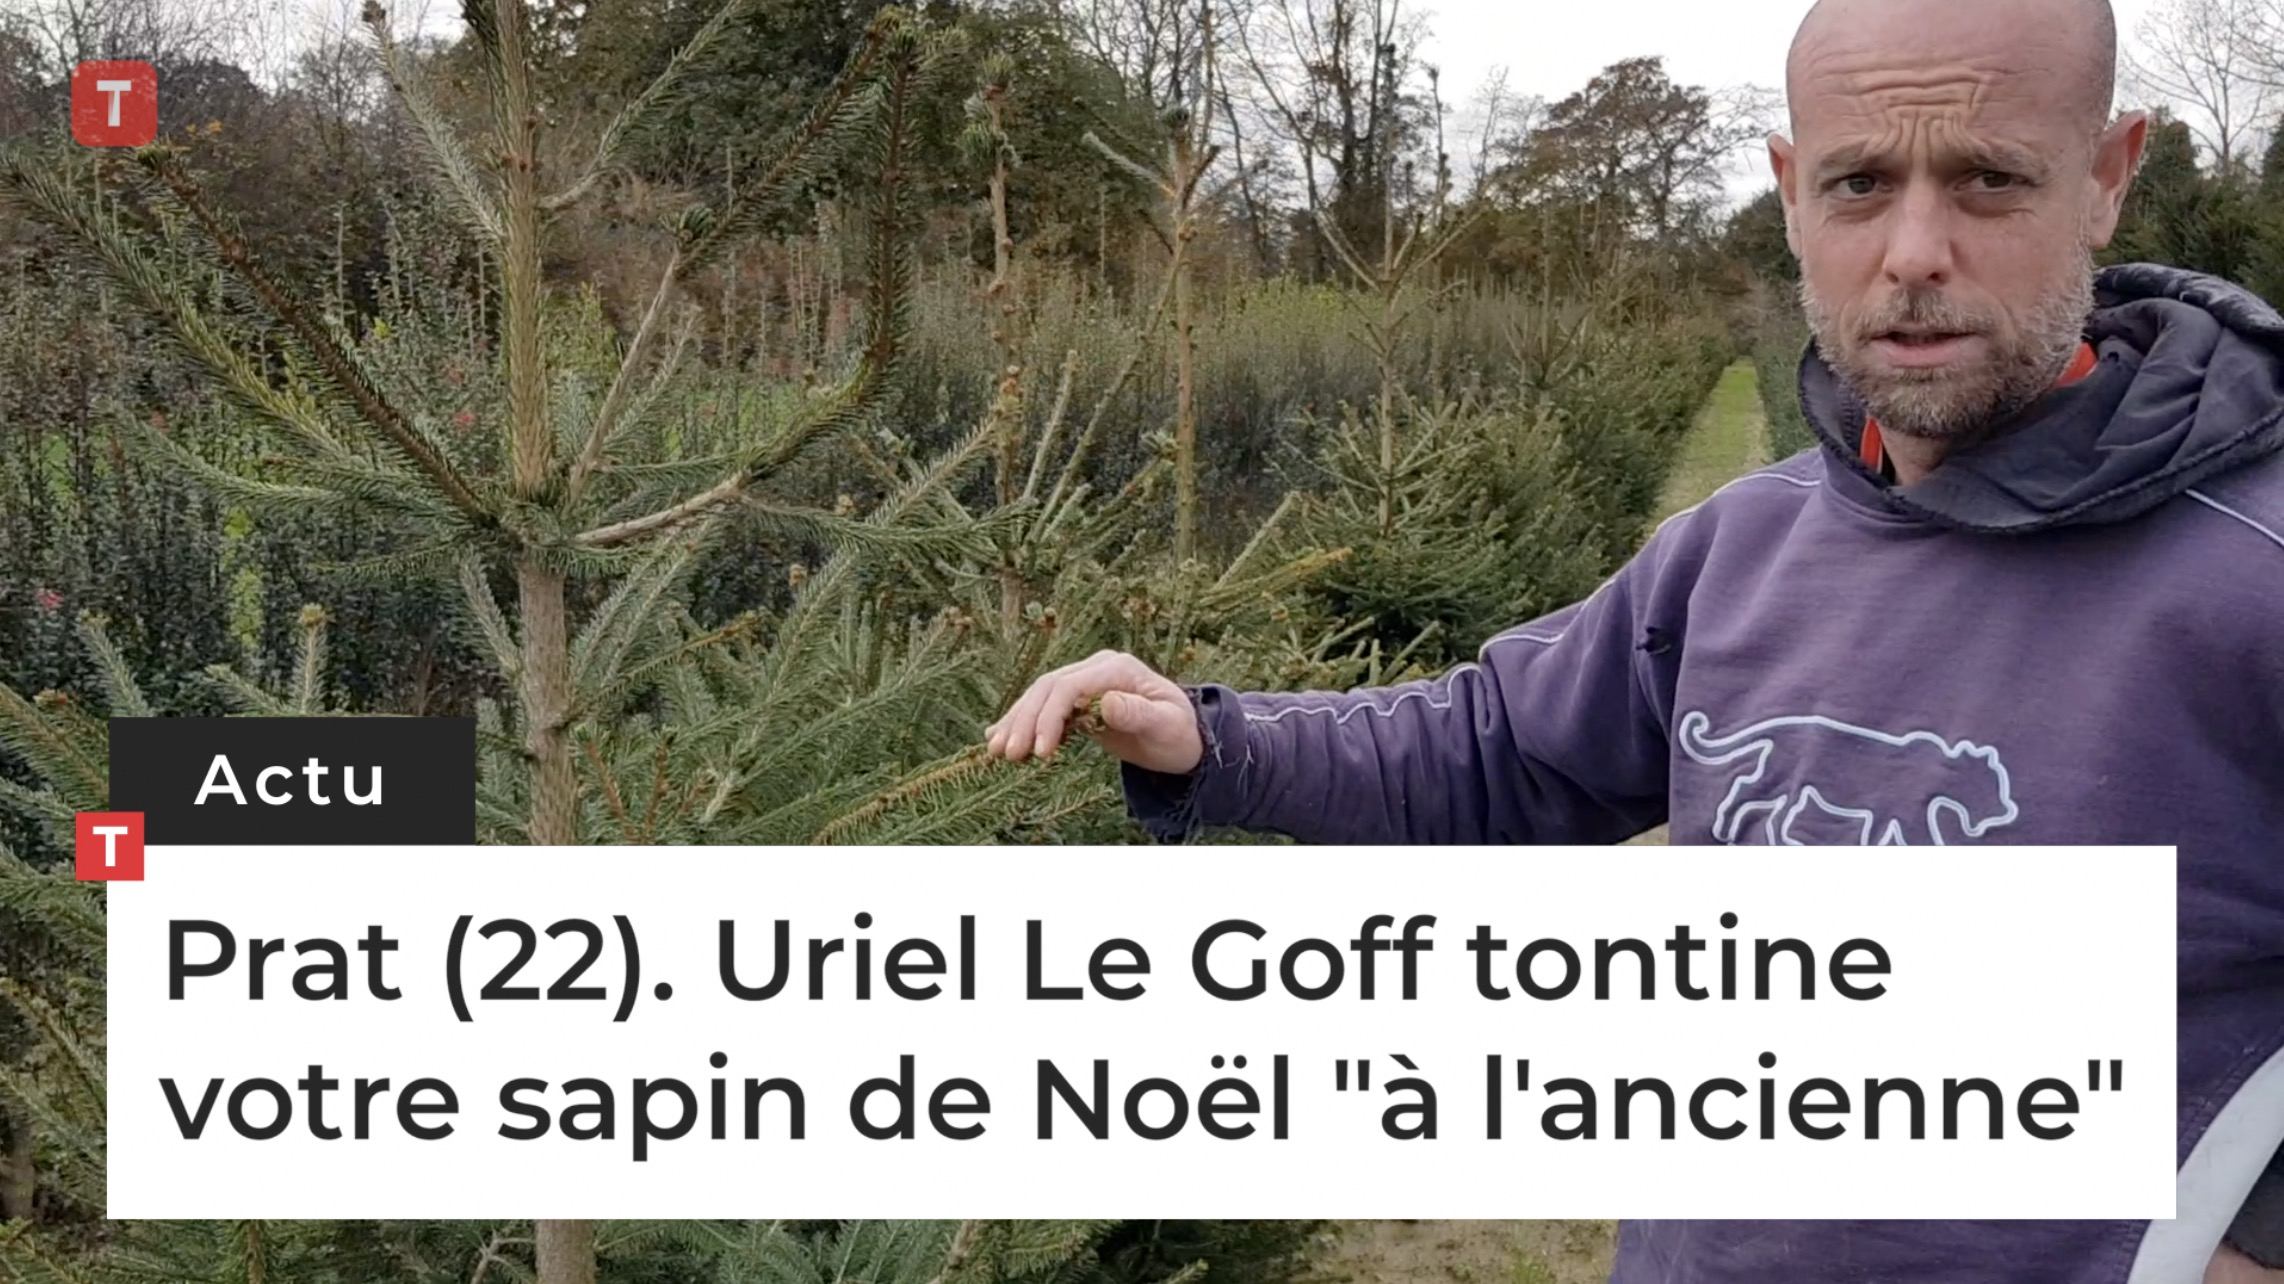 Prat (22). Uriel Le Goff tontine votre sapin de Noël "à l'ancienne" (Le Télégramme)